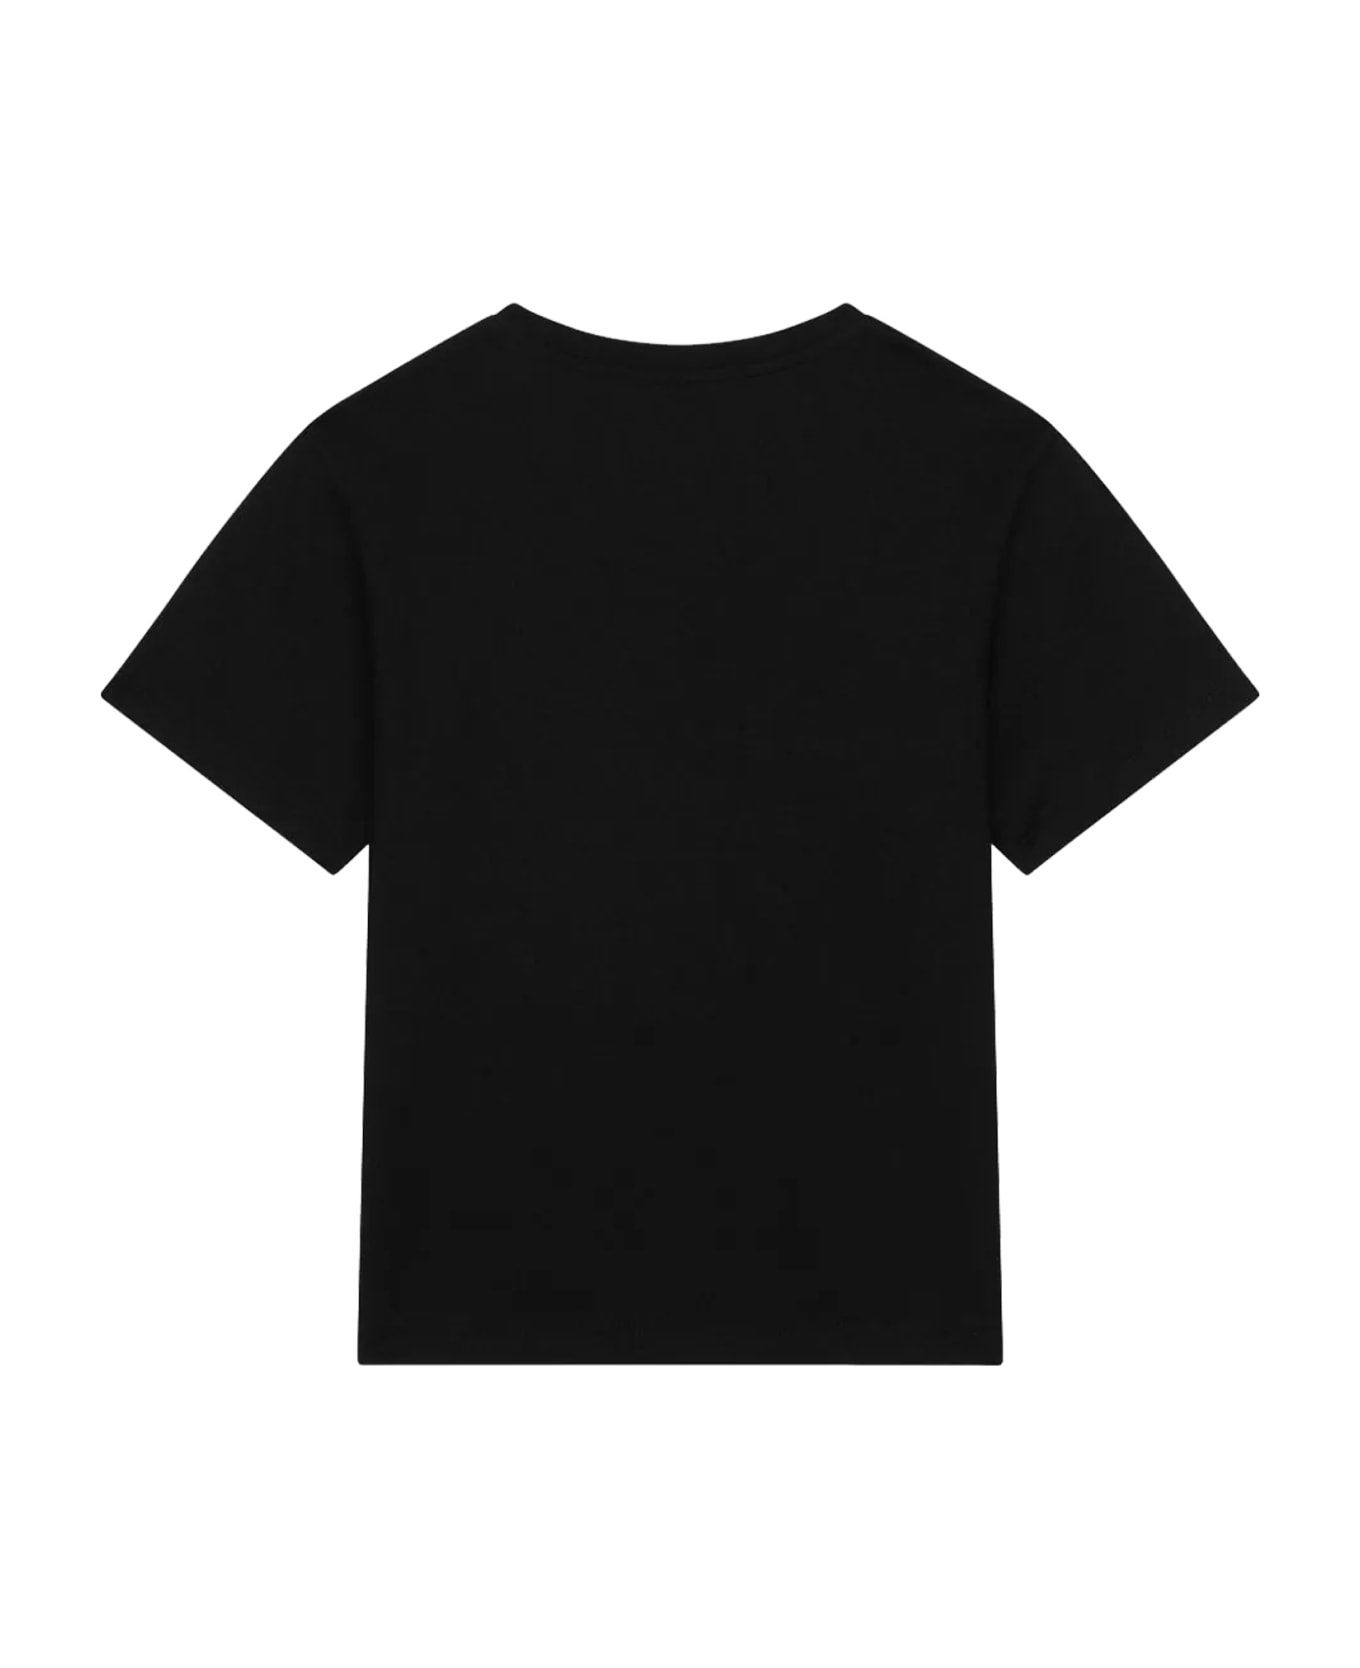 Dolce & Gabbana T-shirt - Back